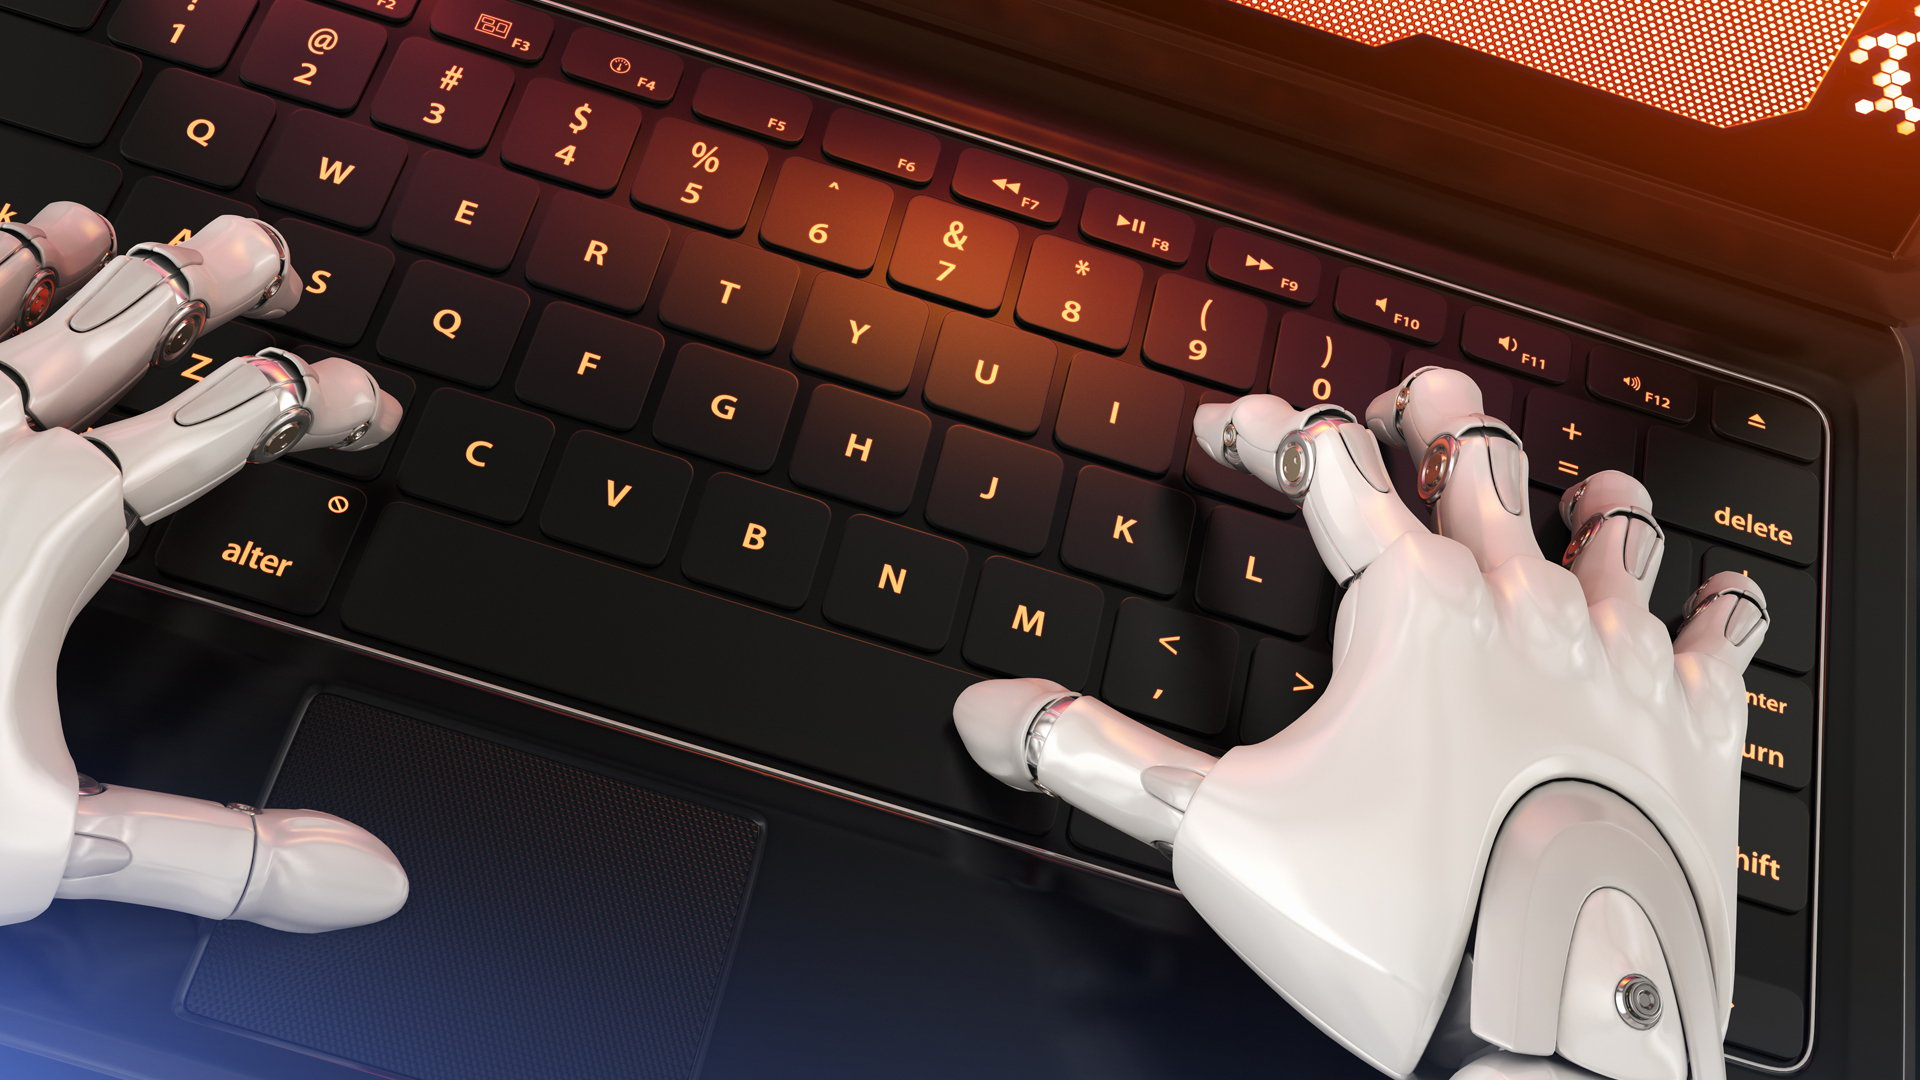 Robot-typing-on-keyboard